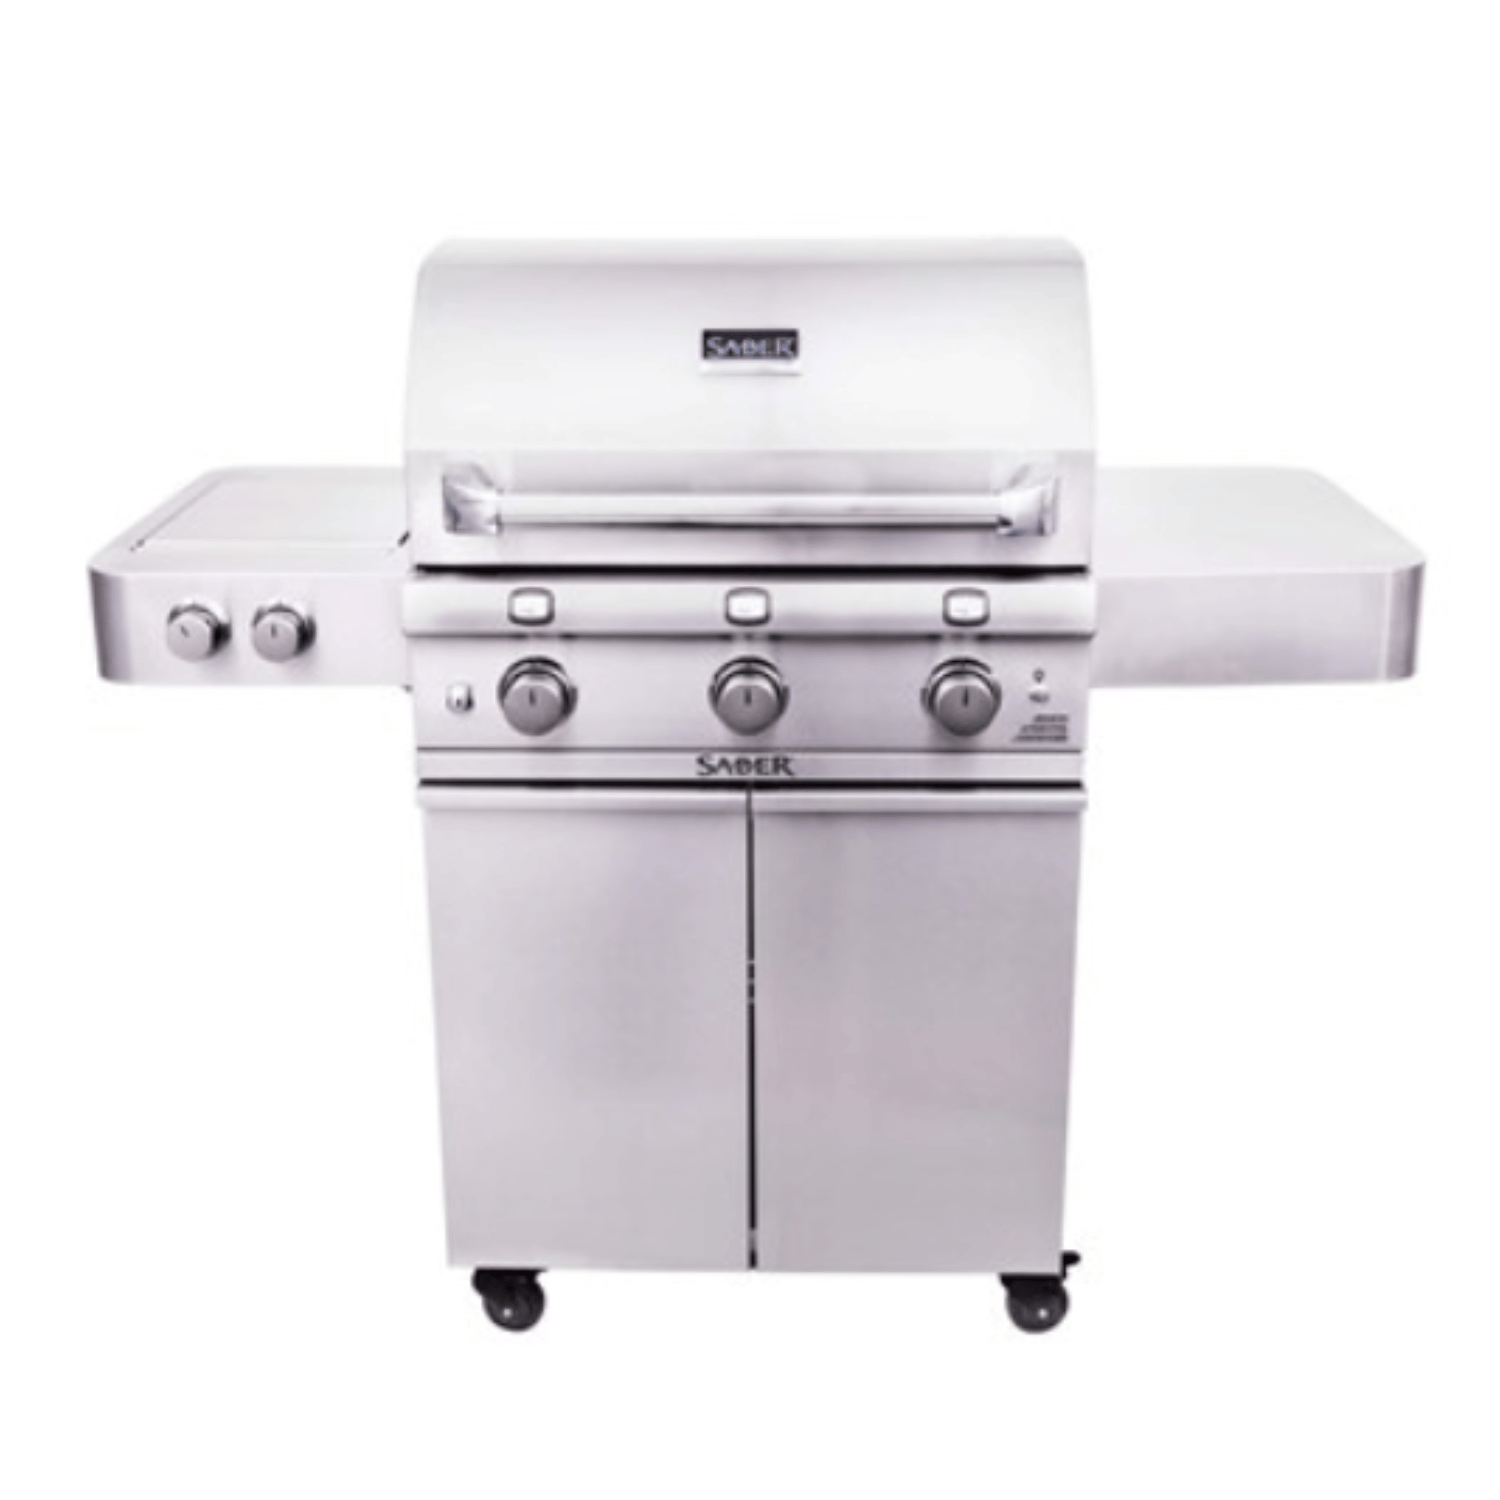 Barbecue Premium 500 – Saber